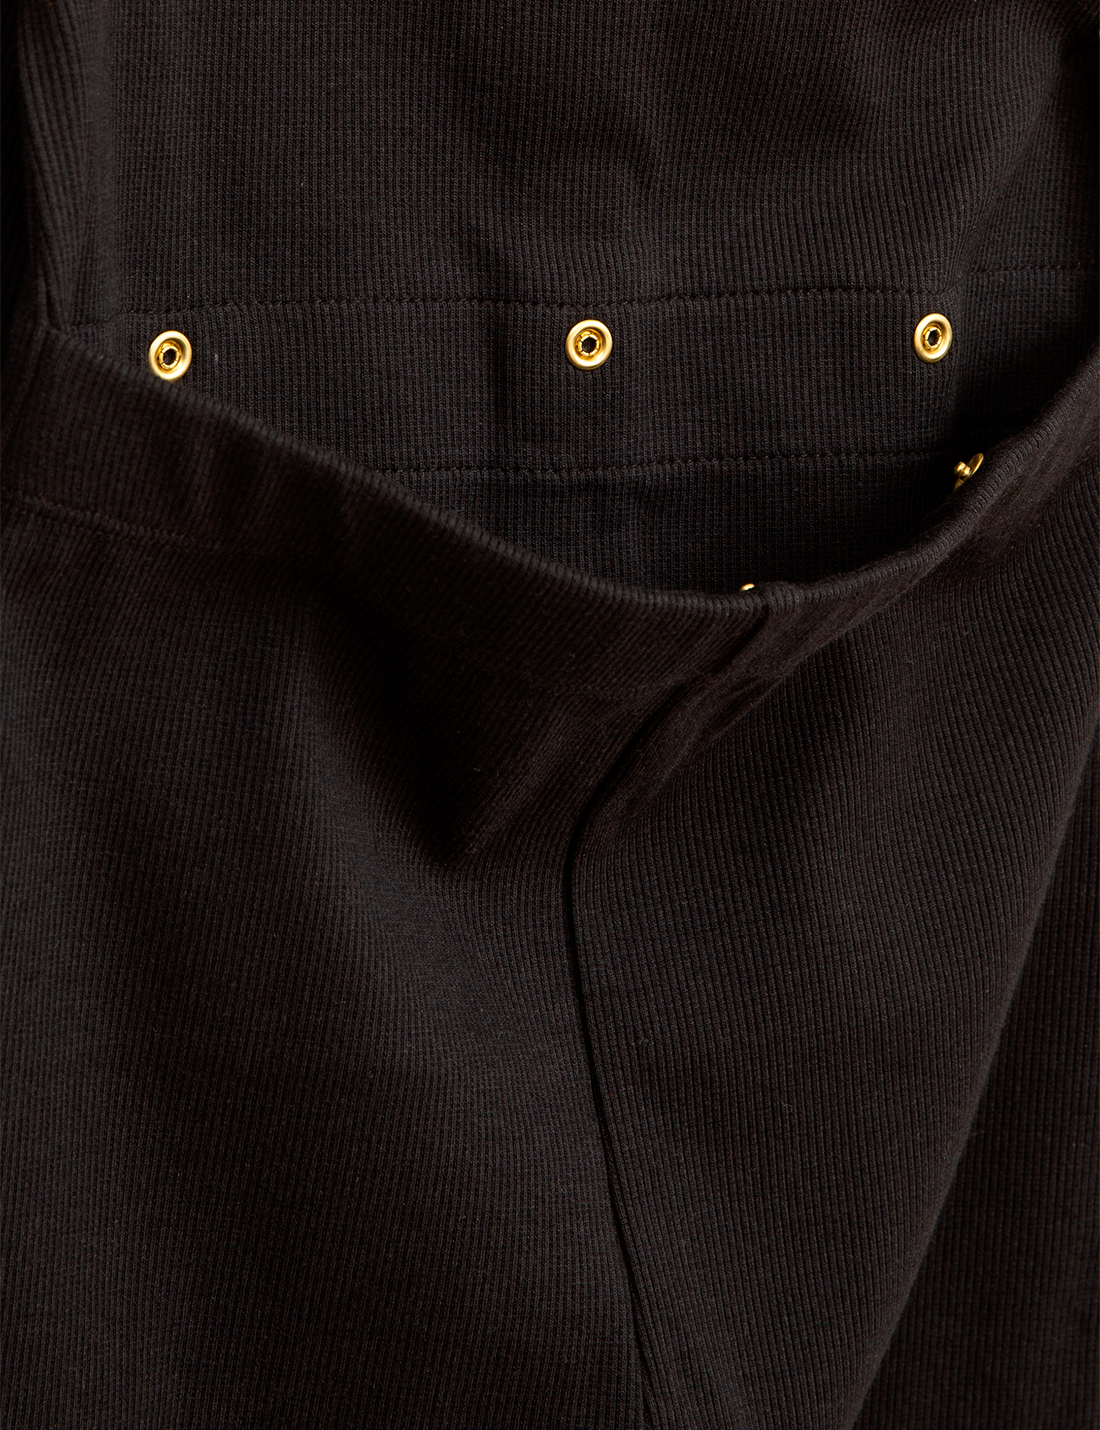 MINI RODINI Solid rib jumpsuit, Black - Cemarose Children's Fashion Boutique